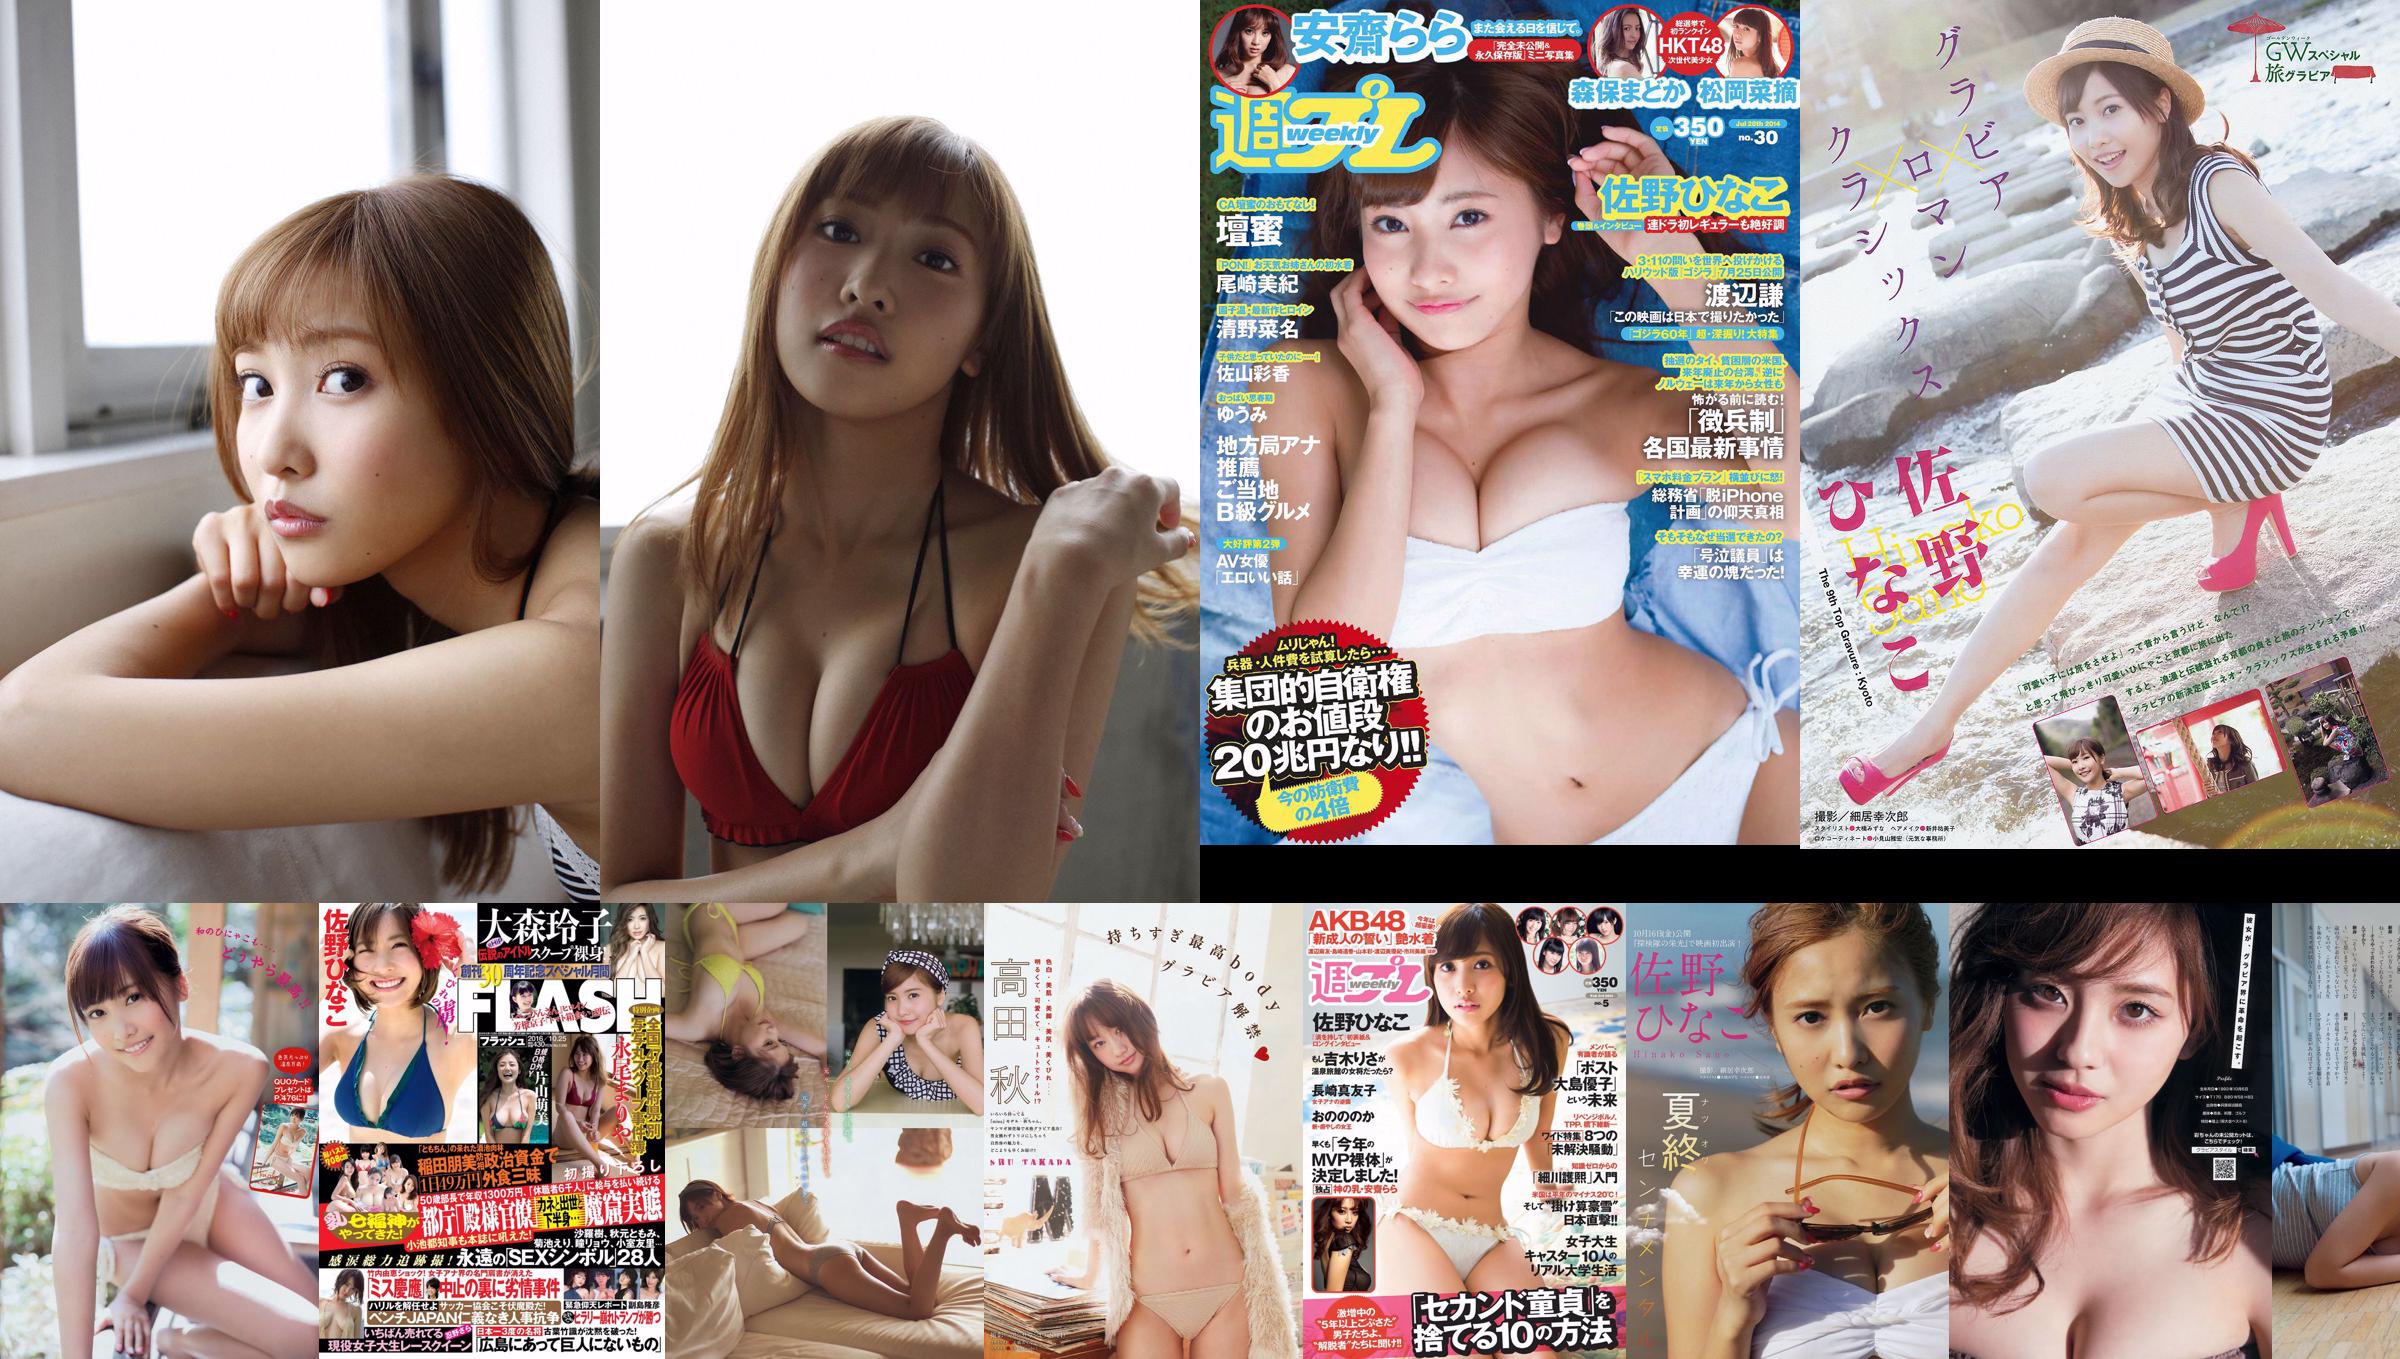 [Young Magazine] Hinako Sano Miwako Kakei 2014 No.12 Fotografia No.d79627 Pagina 1